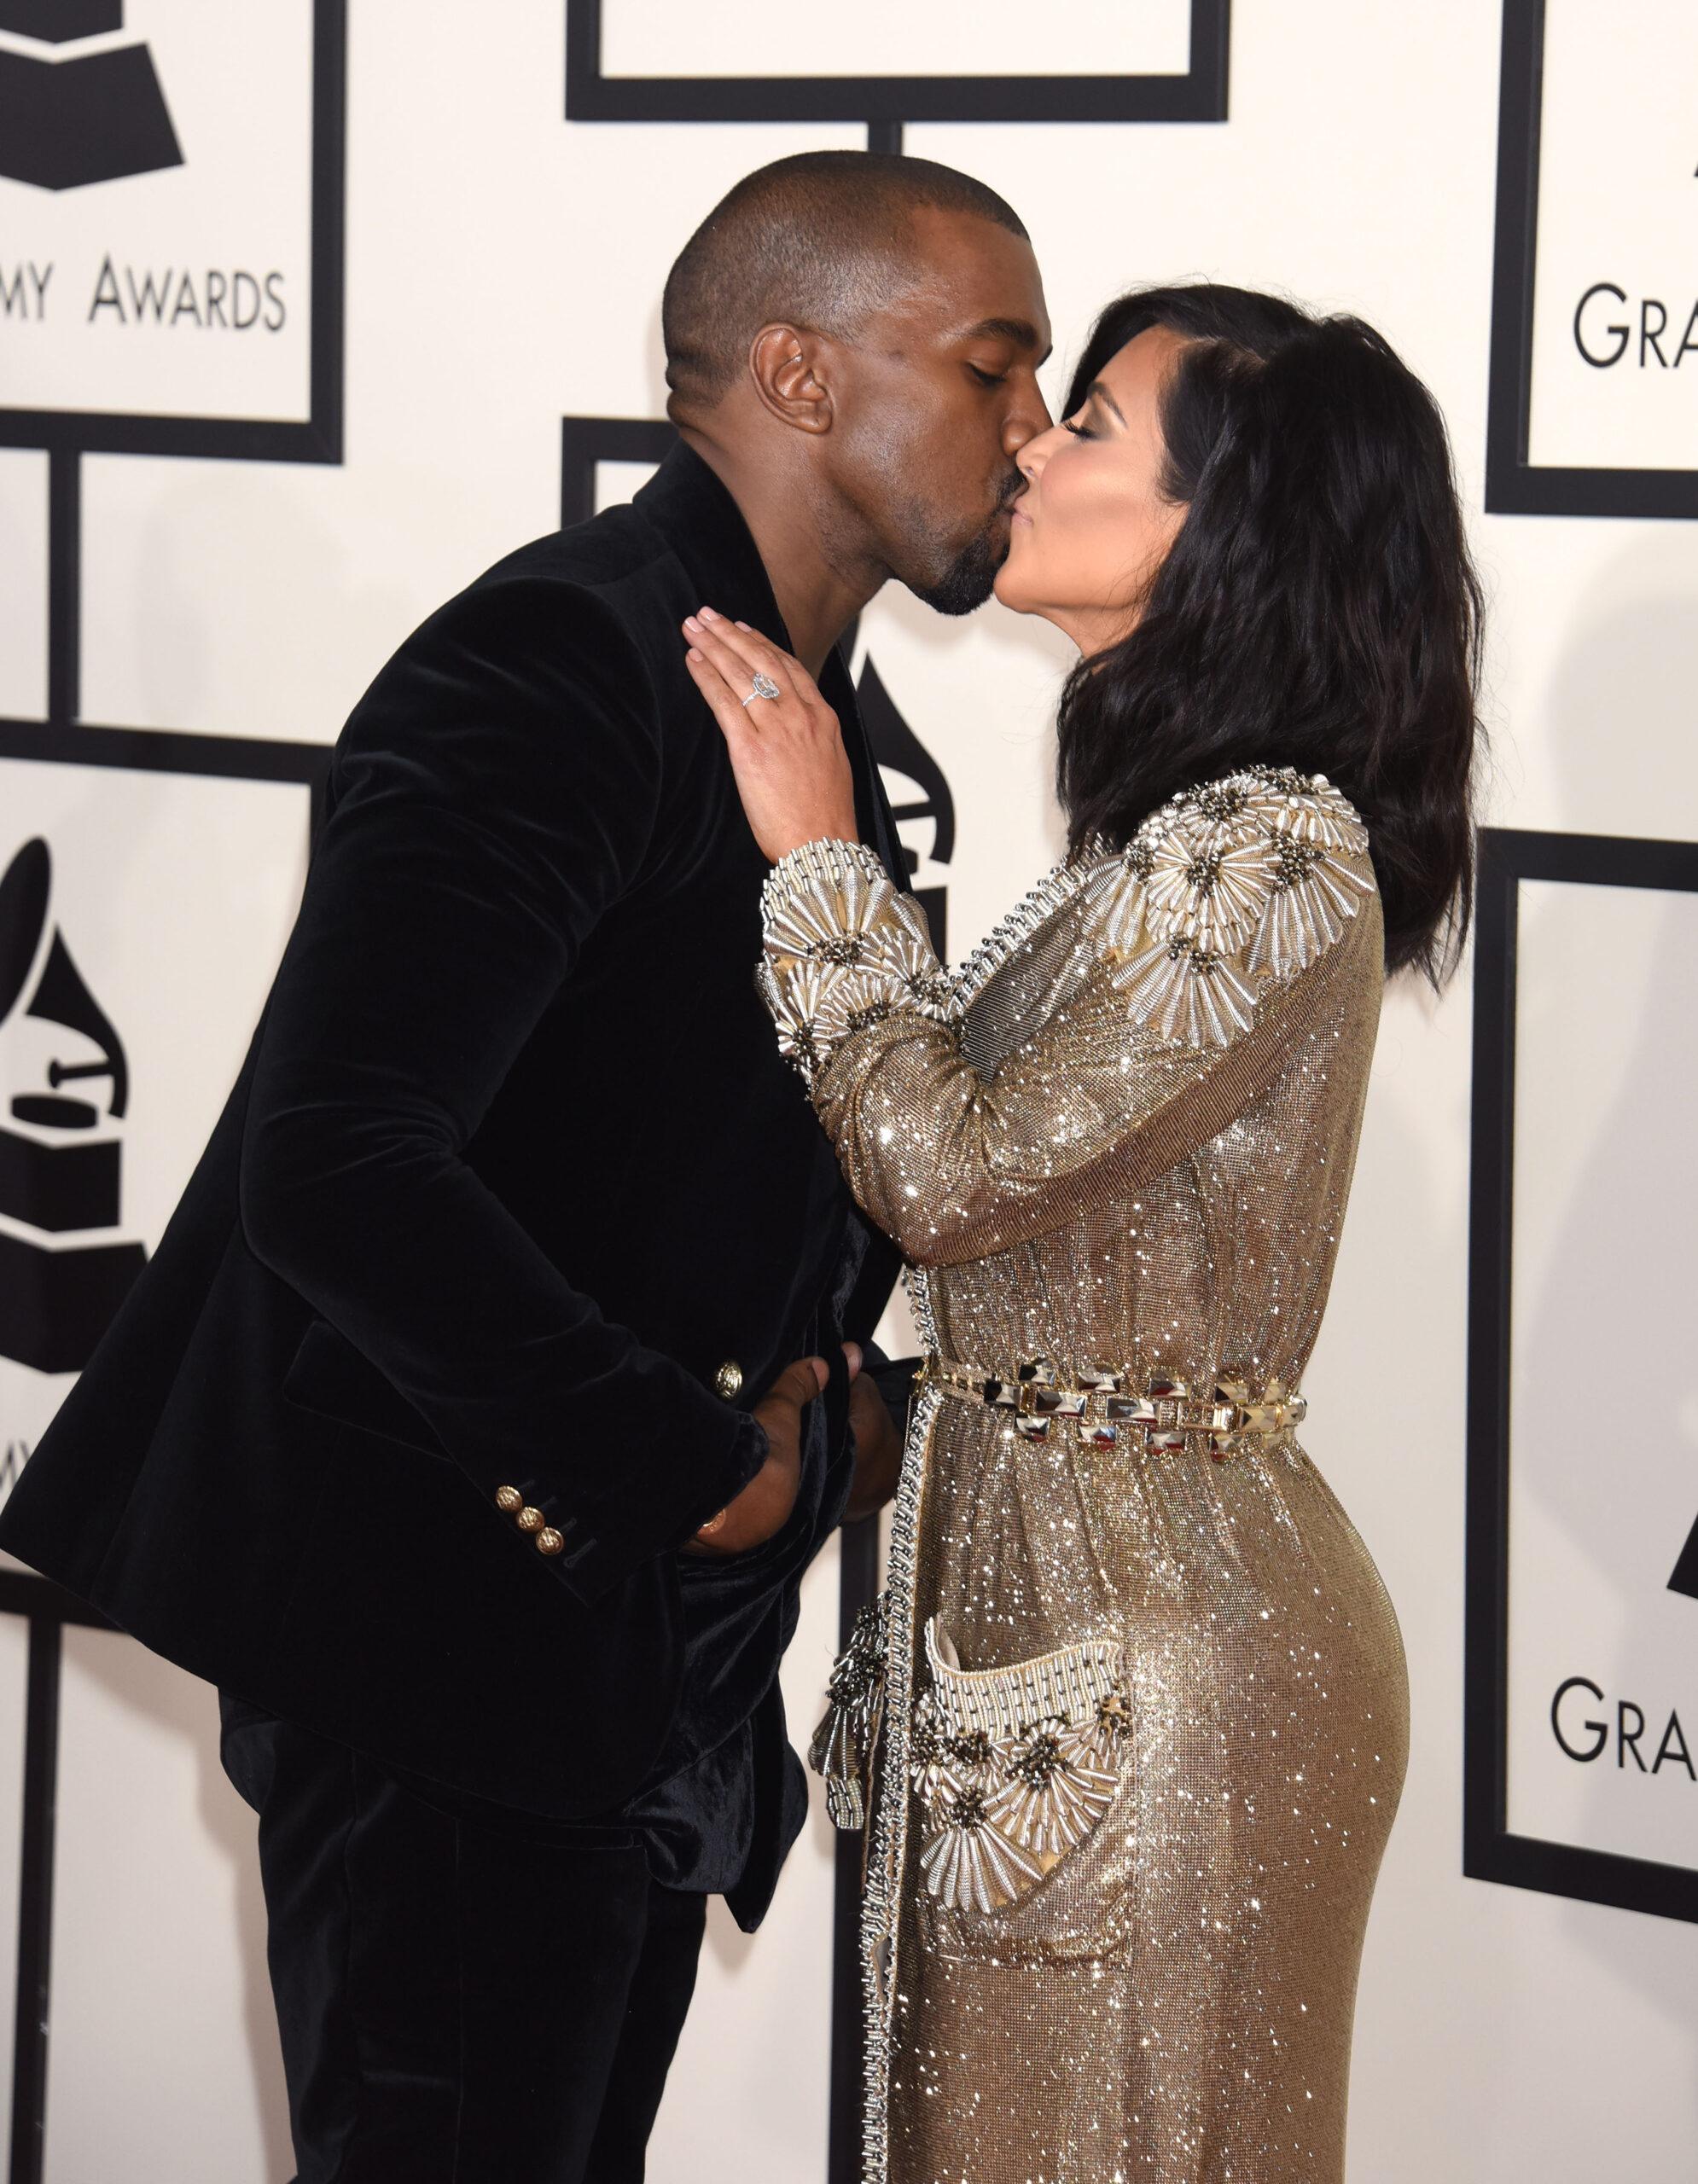 Kim Kardashian Files To Become ‘Legally’ Single, Despite Kanye’s Pleas